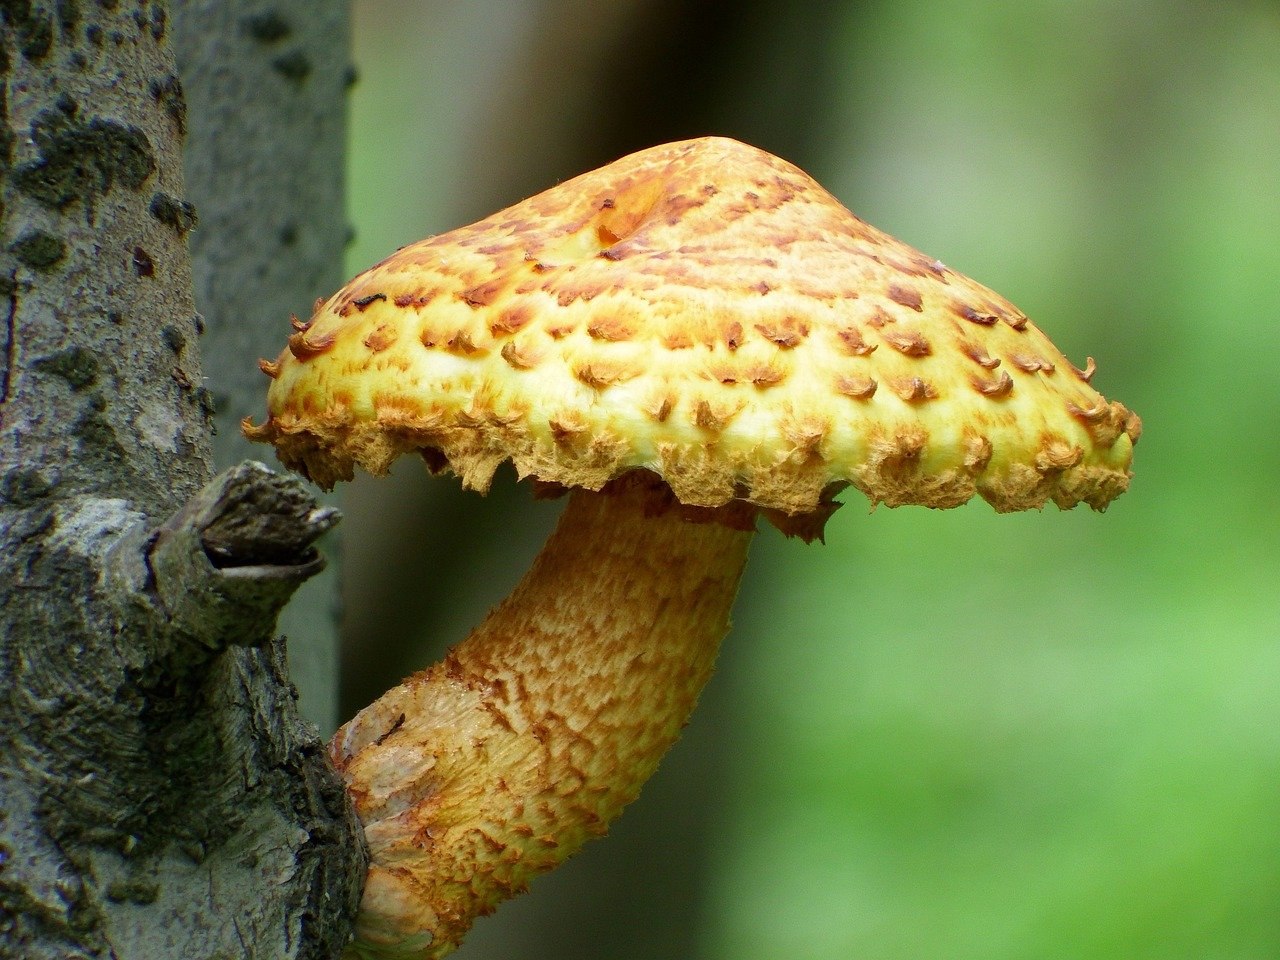 грибы опята на дереве фото